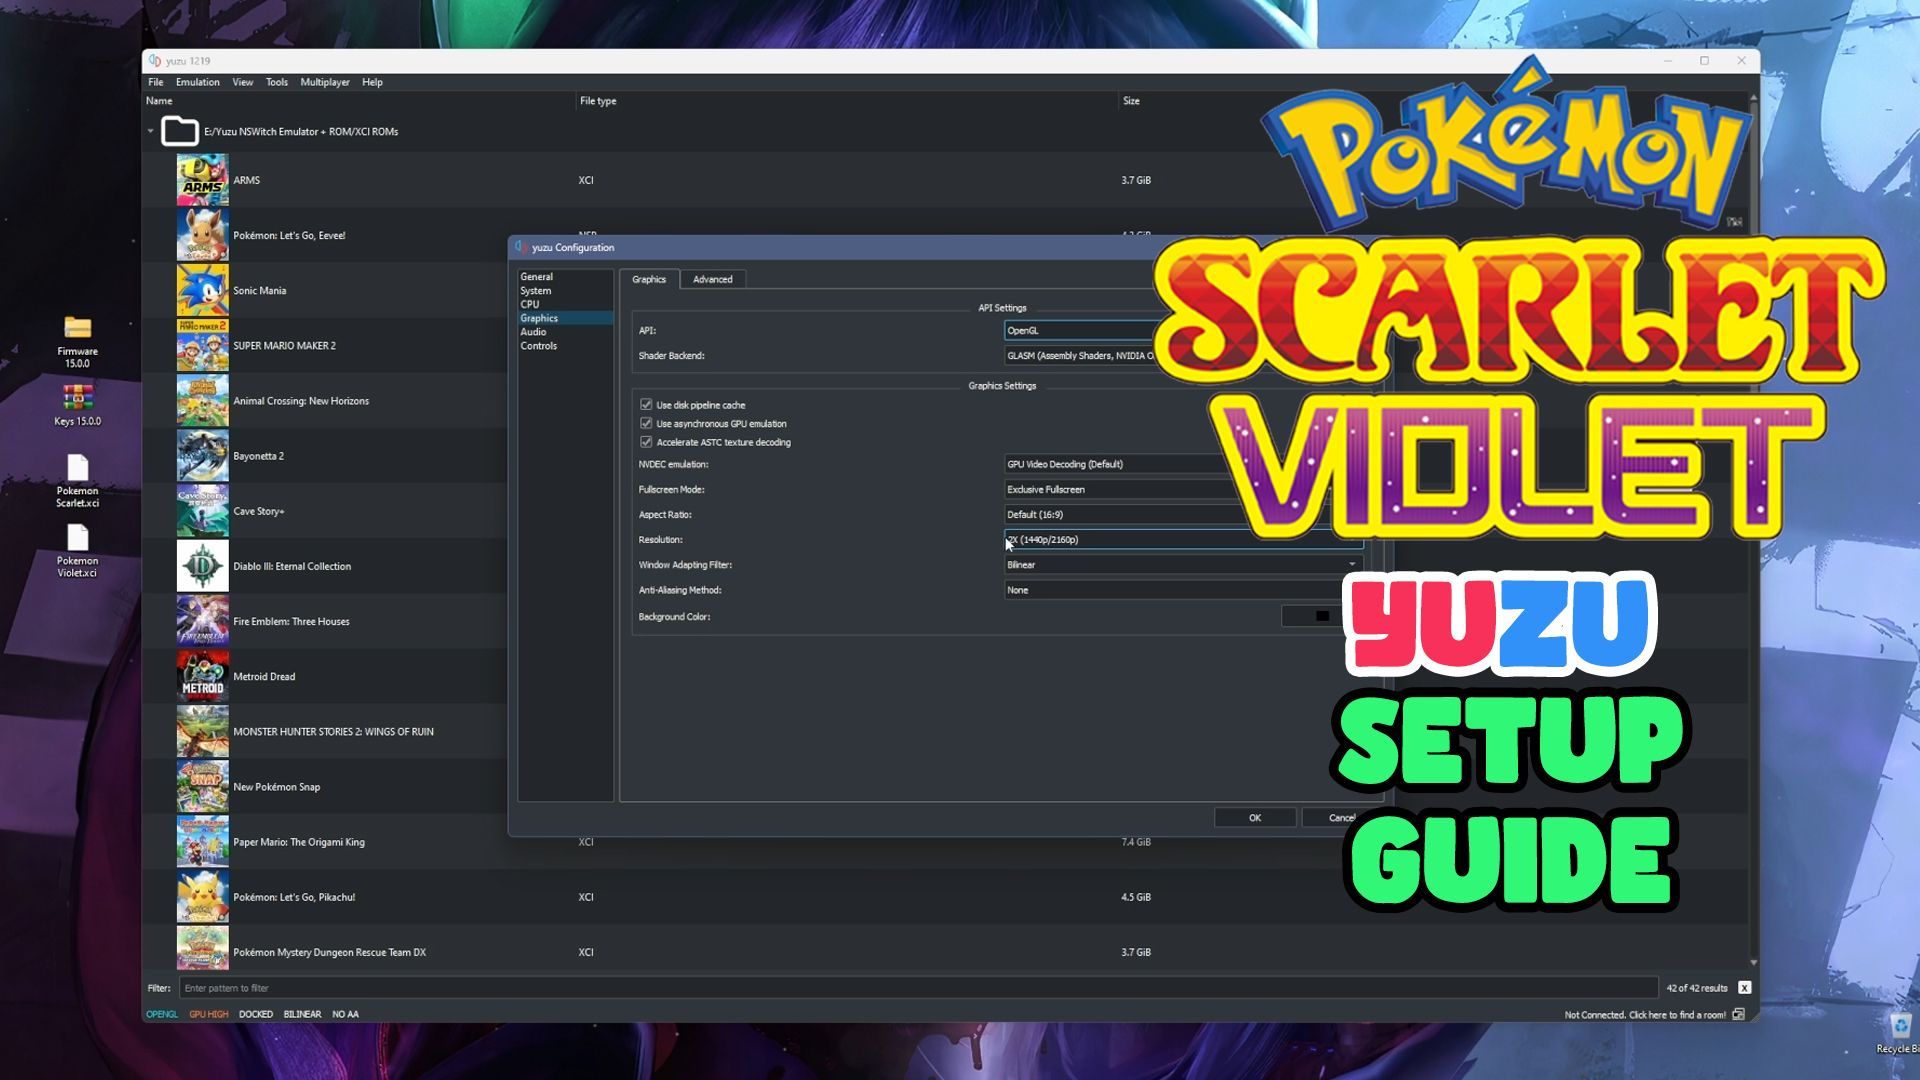 How to Install Yuzu Switch Emulator with Pokémon Scarlet and